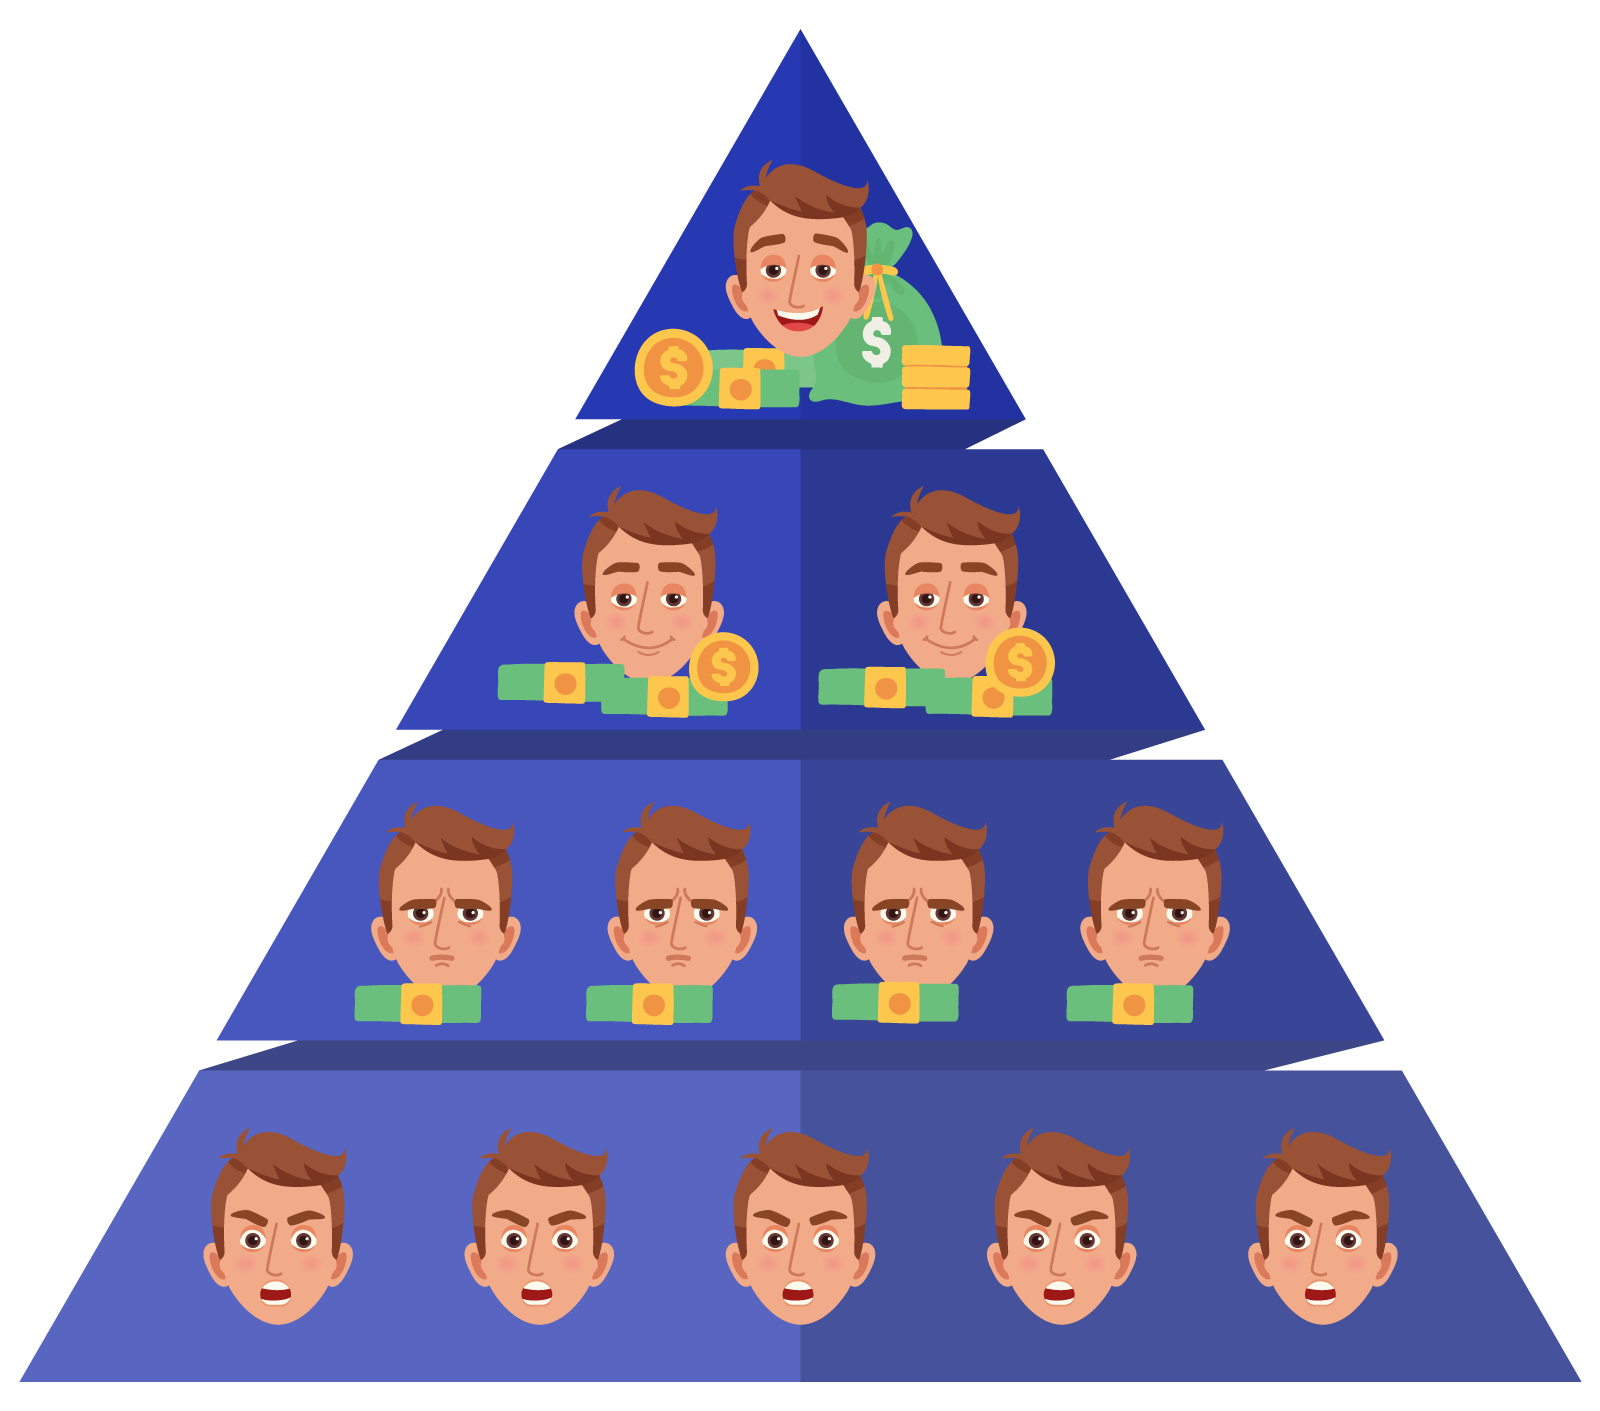 pyramid scheme